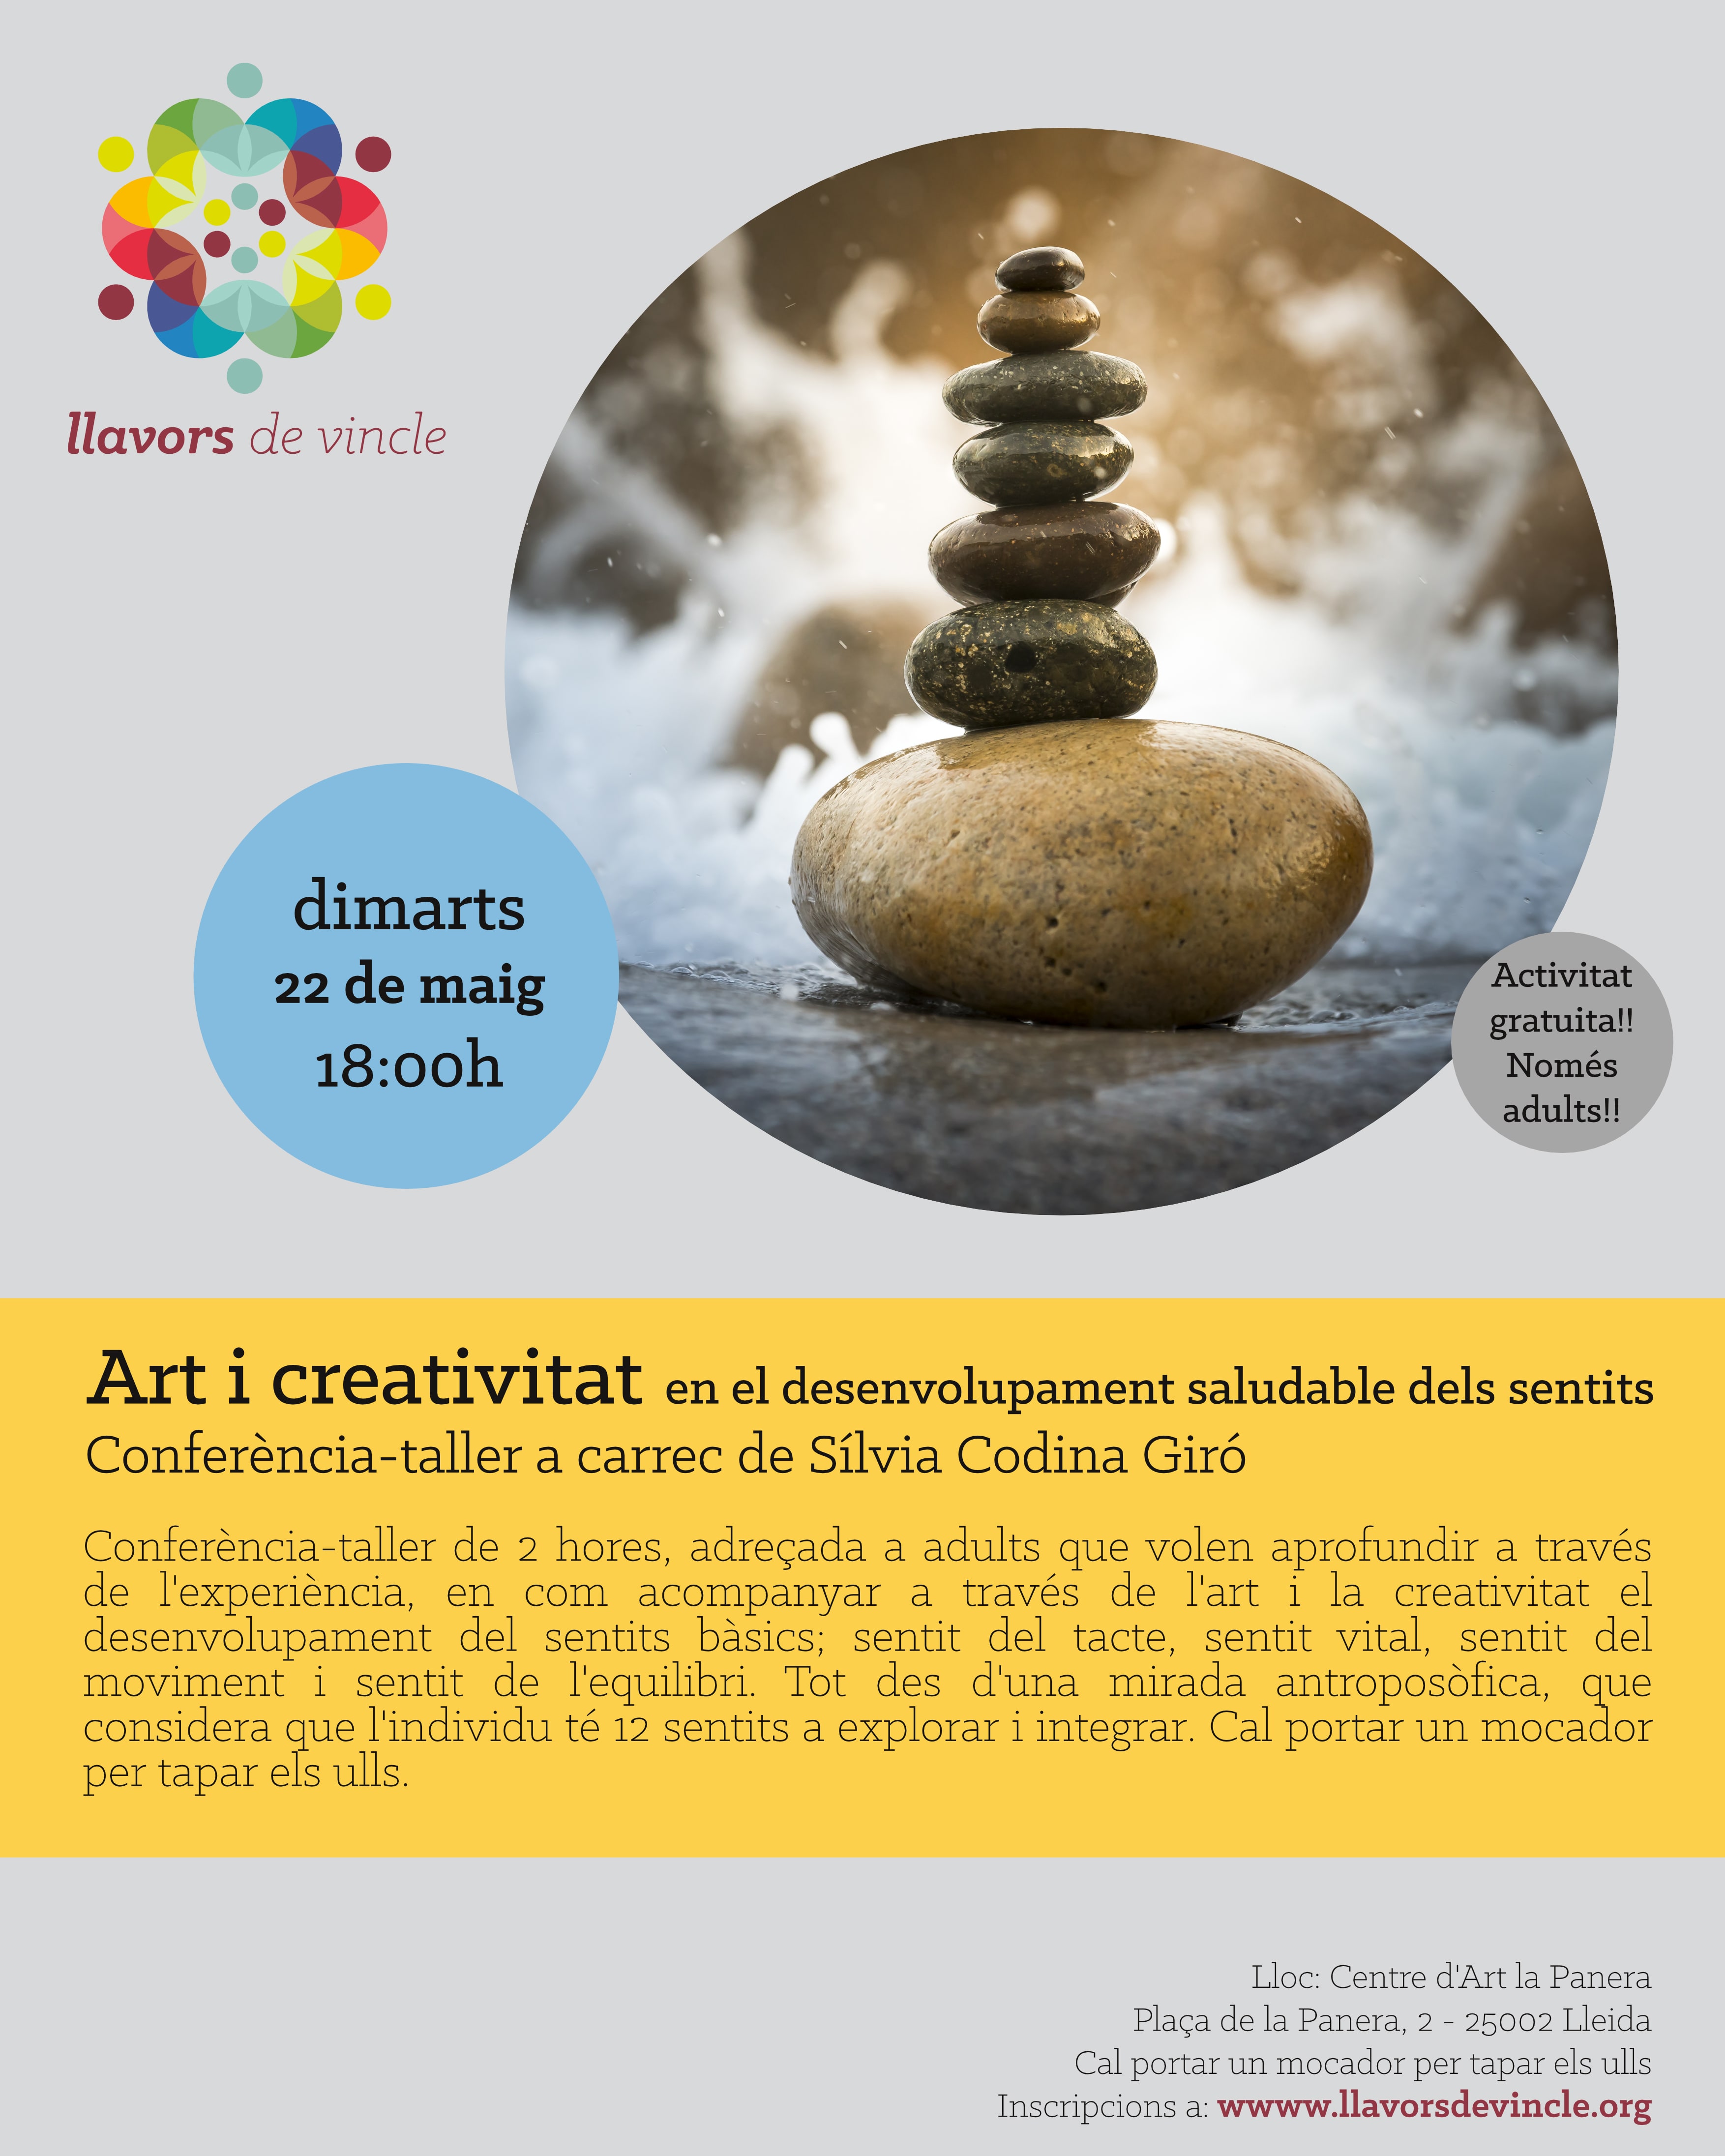 Art i creativitat en el desenvolupament saludable dels sentits